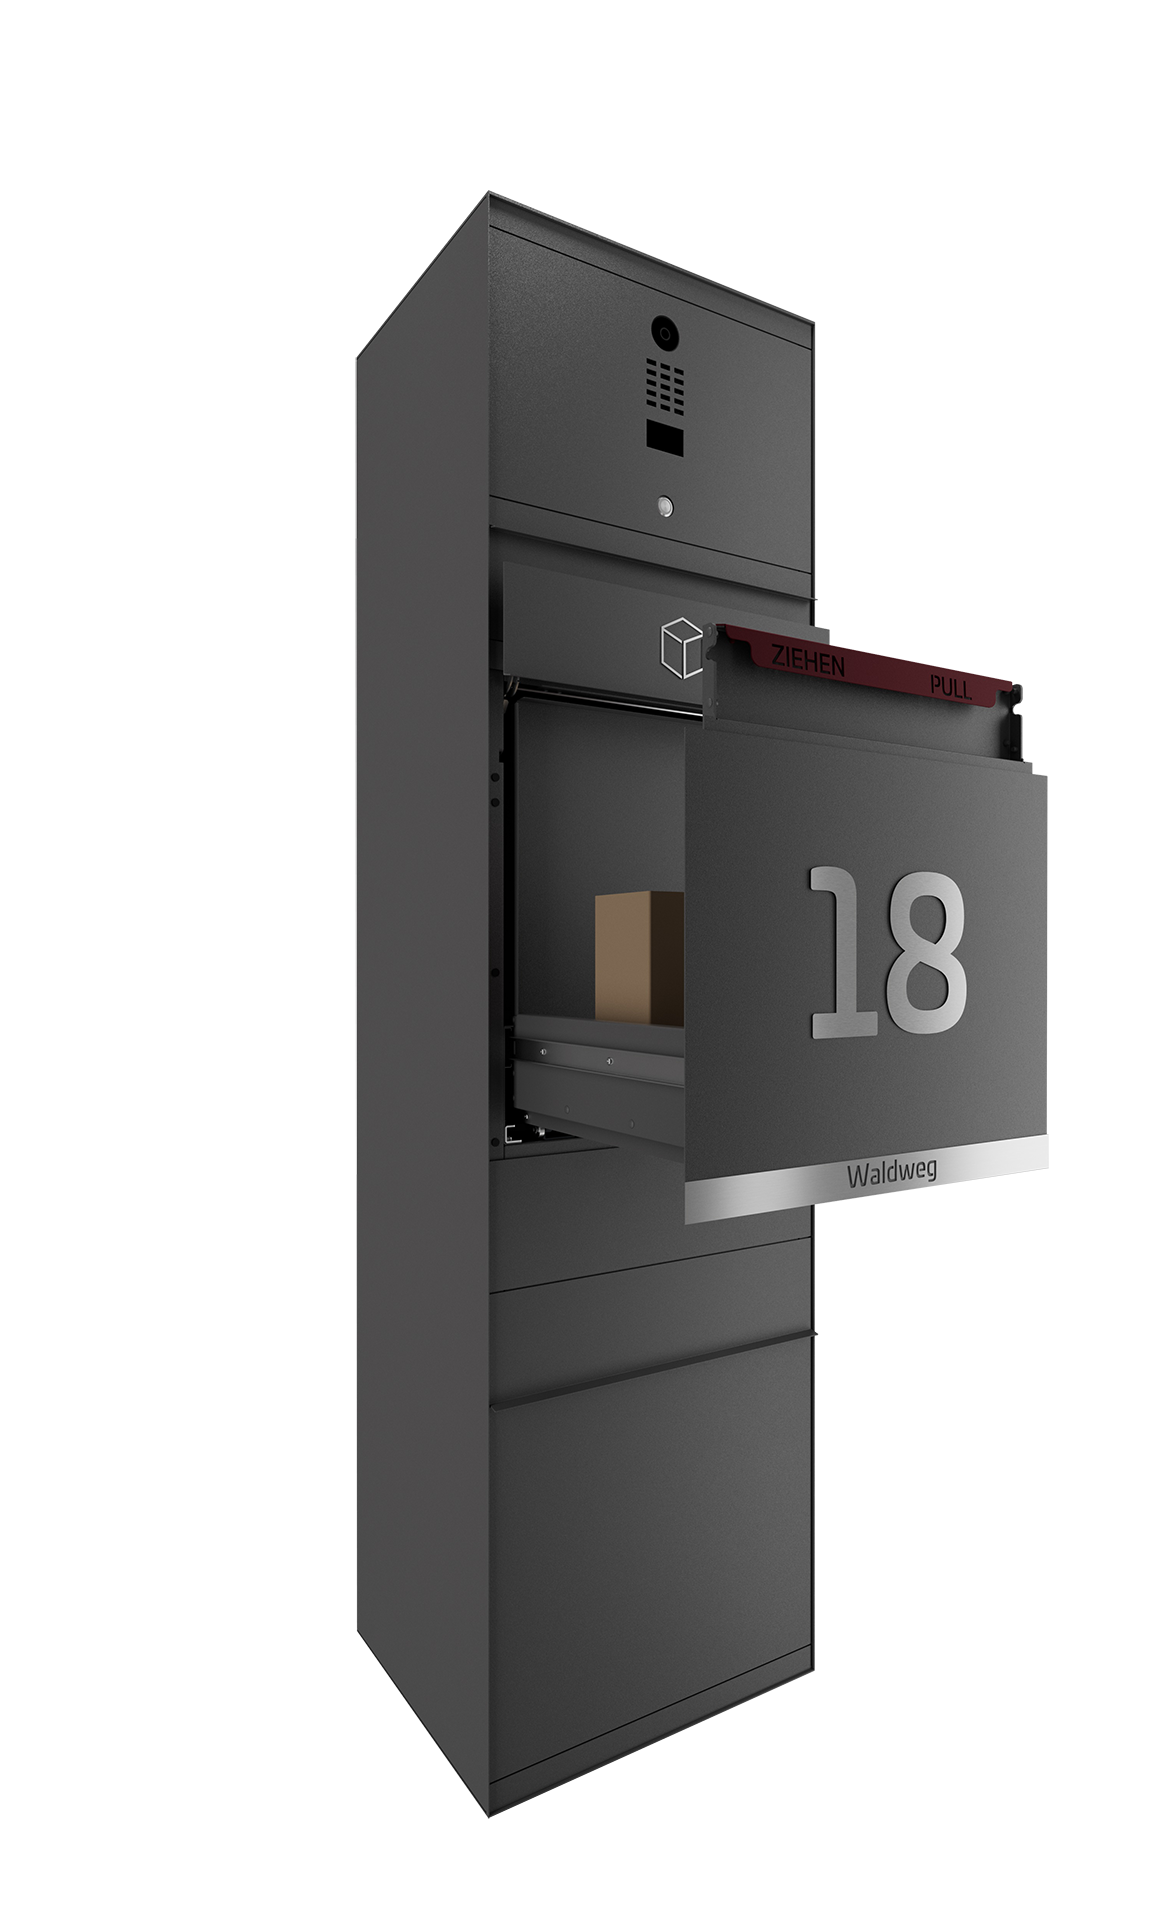 Paketbox mit DoorBird-Videotechnik DB703